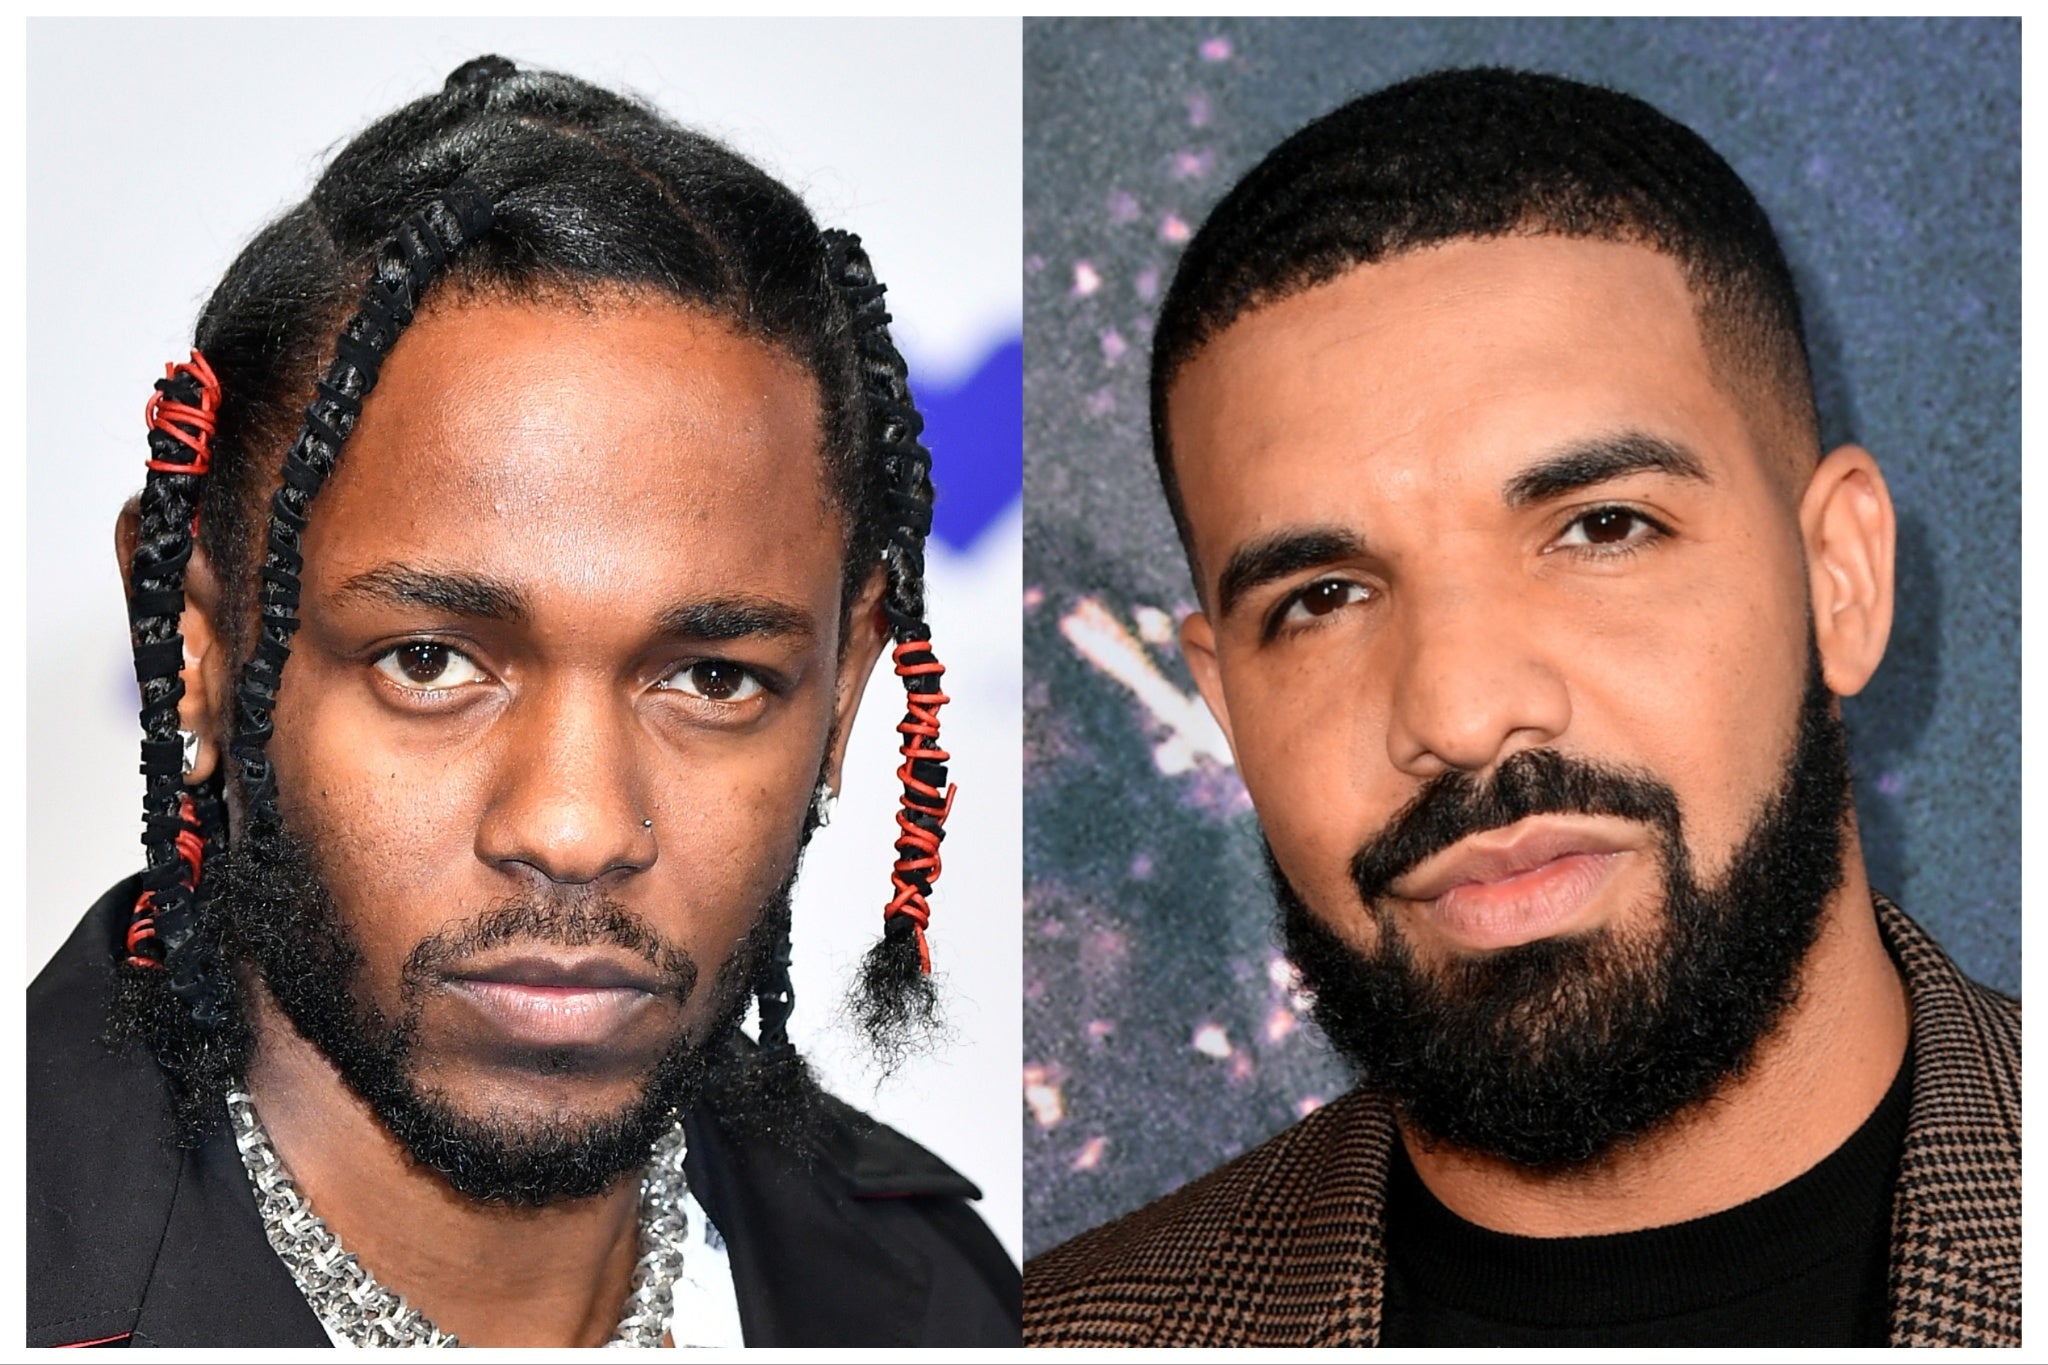 Kendrick Lamar (left) and Drake